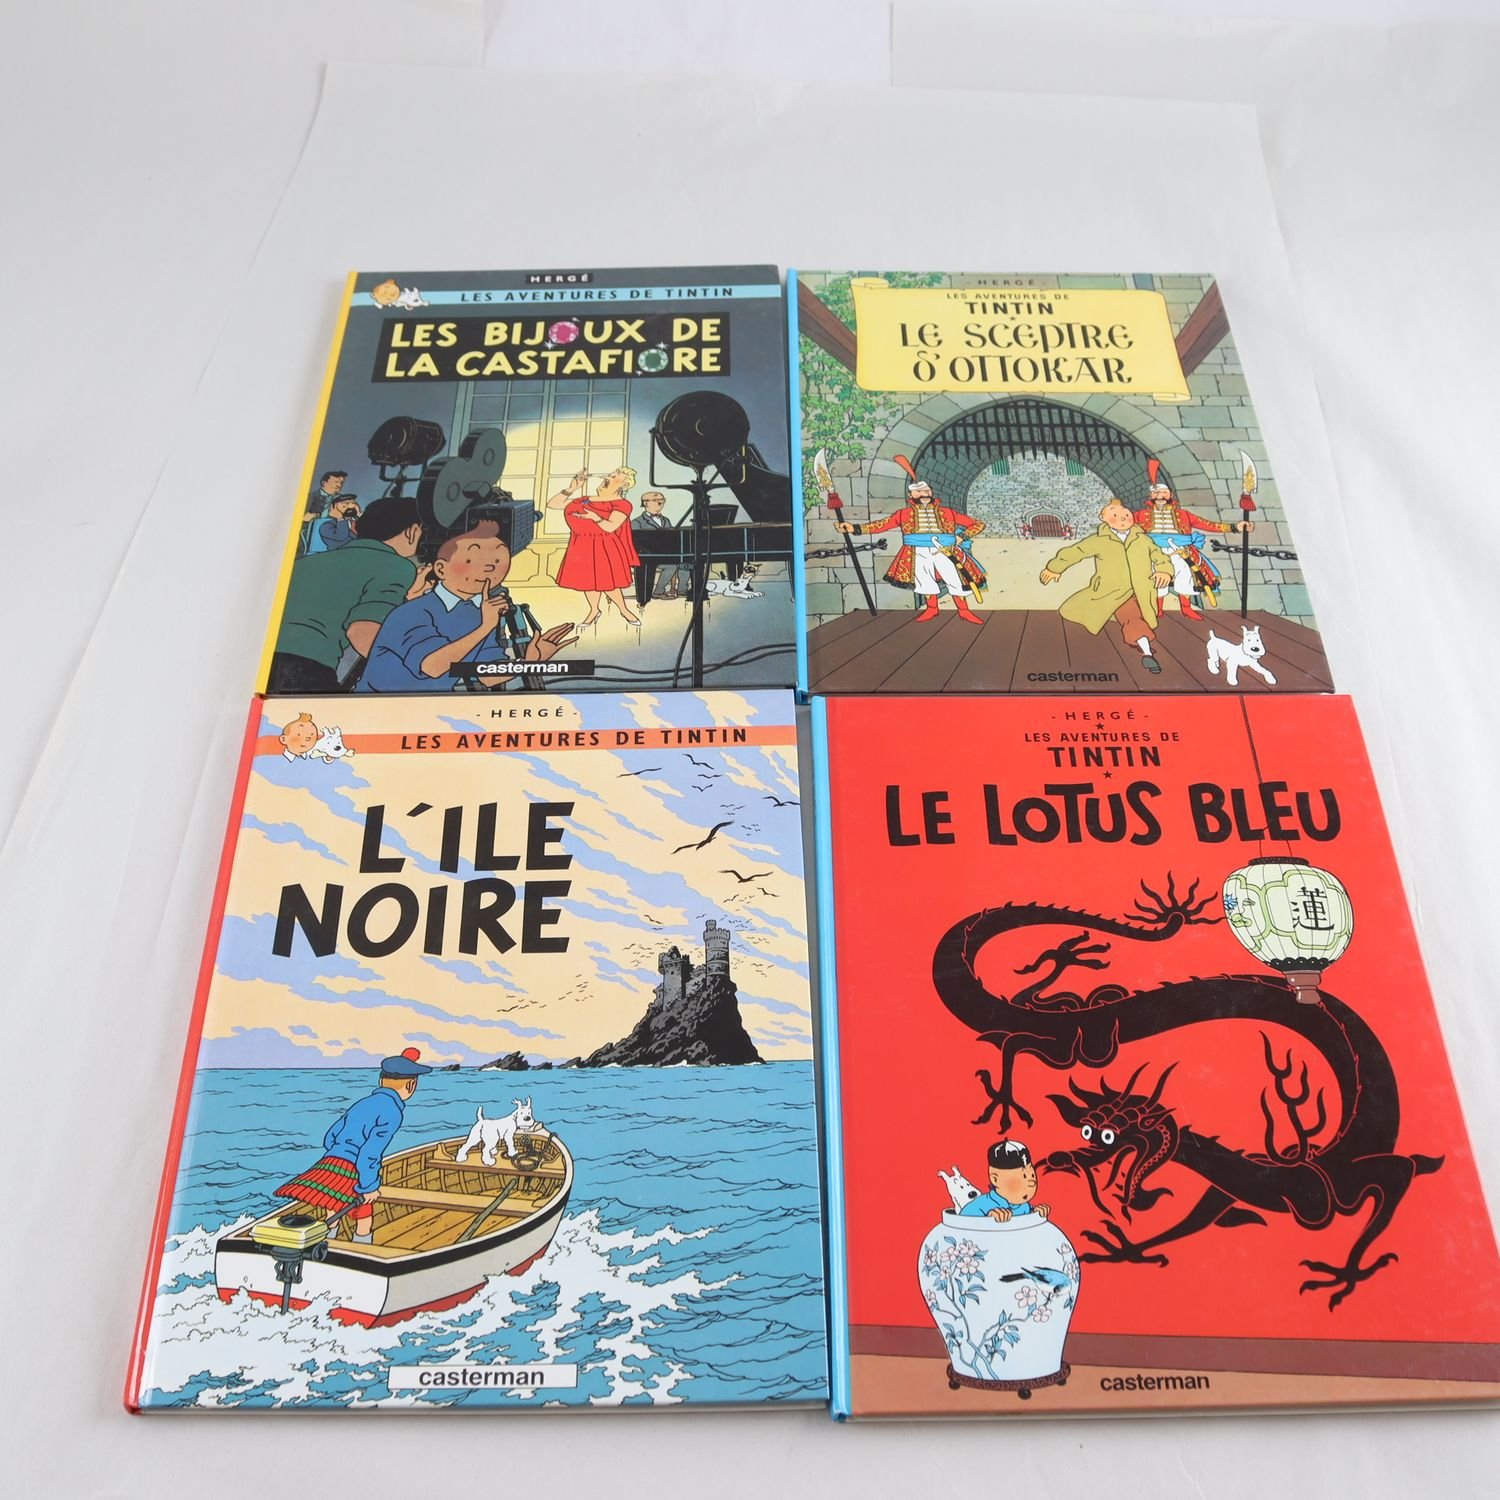 Hergé, Les aventures de Tintin, på originalspråk (franska), 4 inbundna volymer